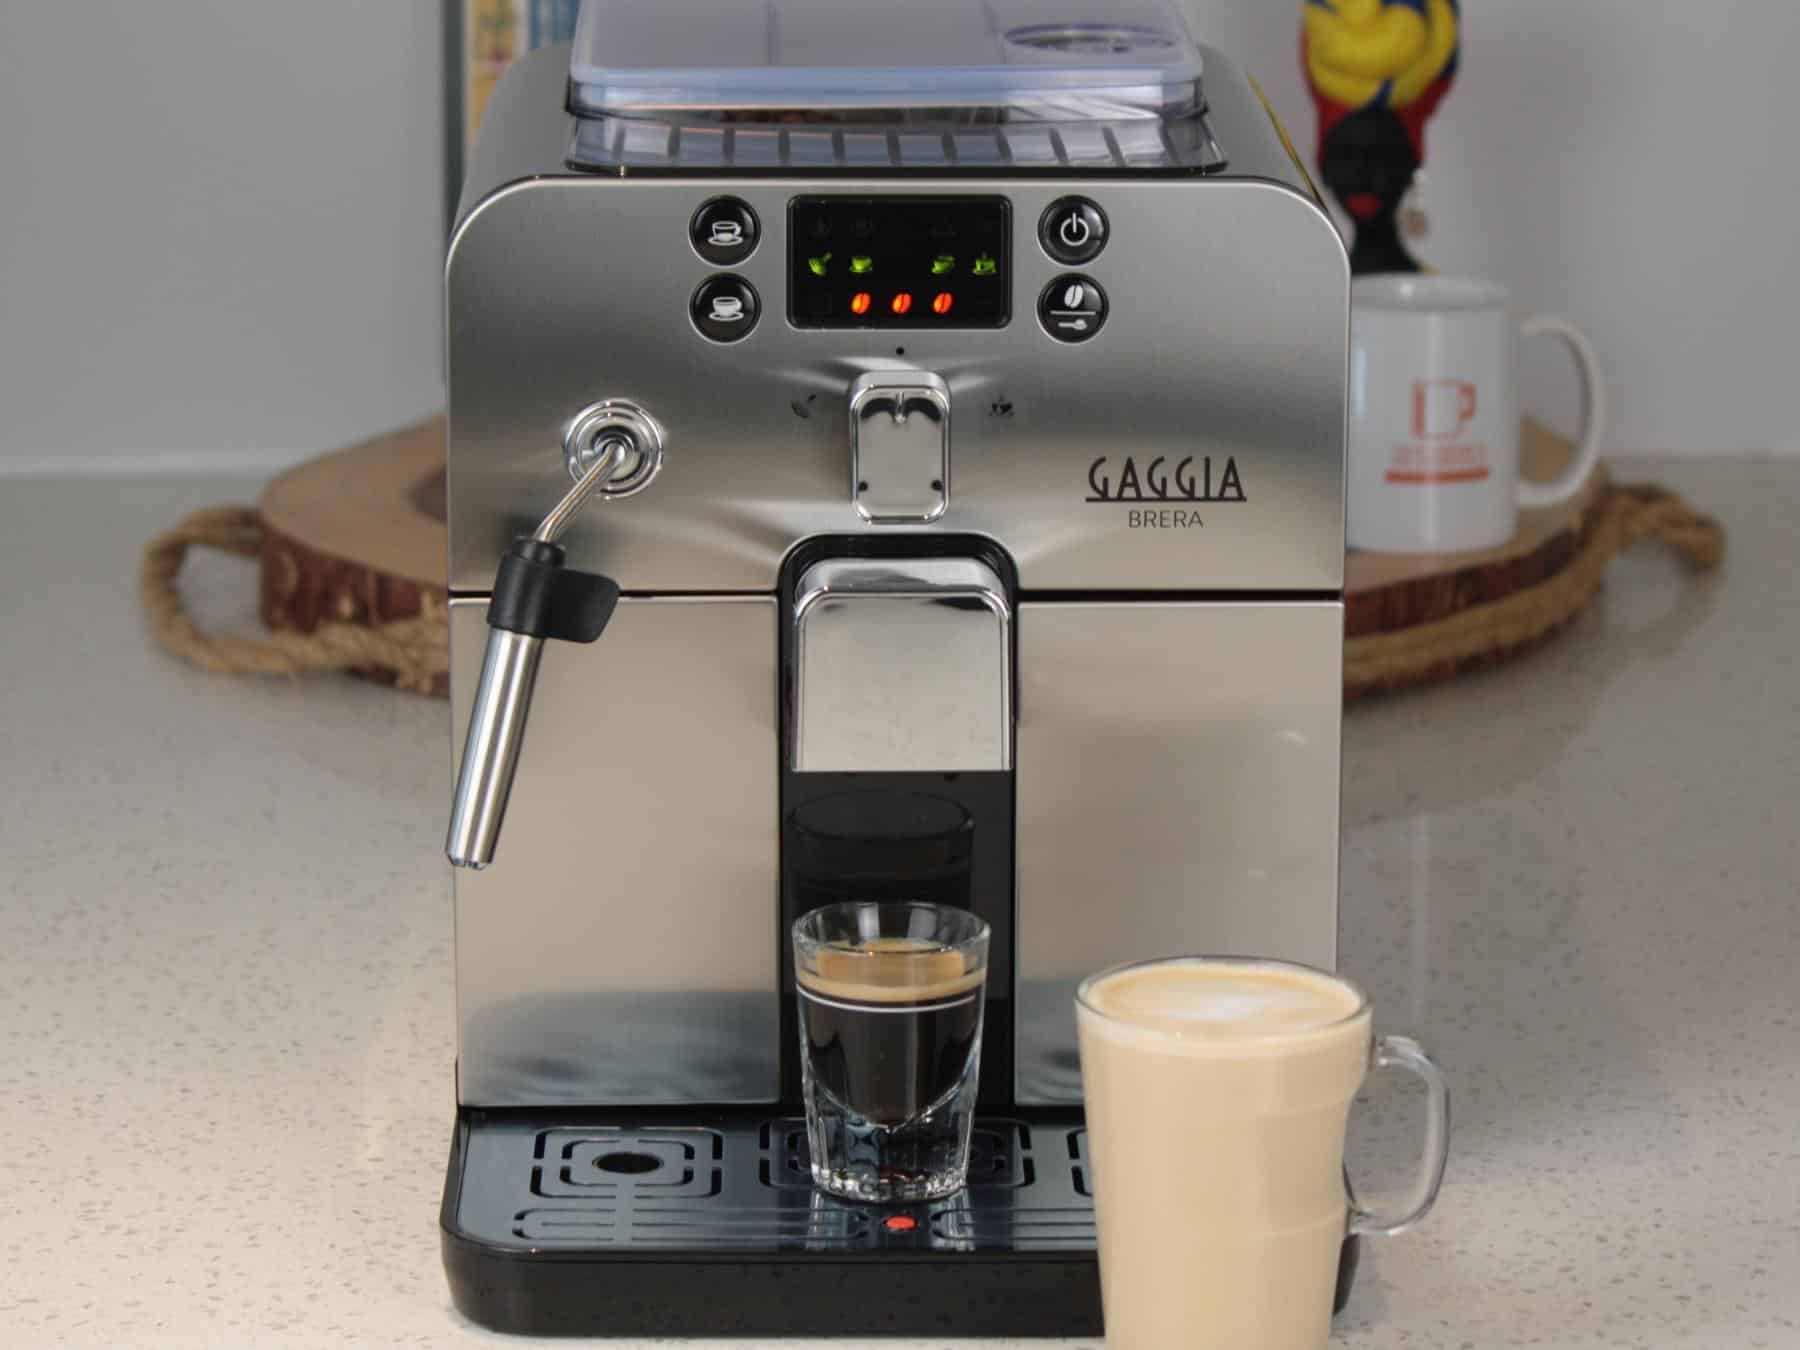 Gaggia Brera super automatic espresso machine